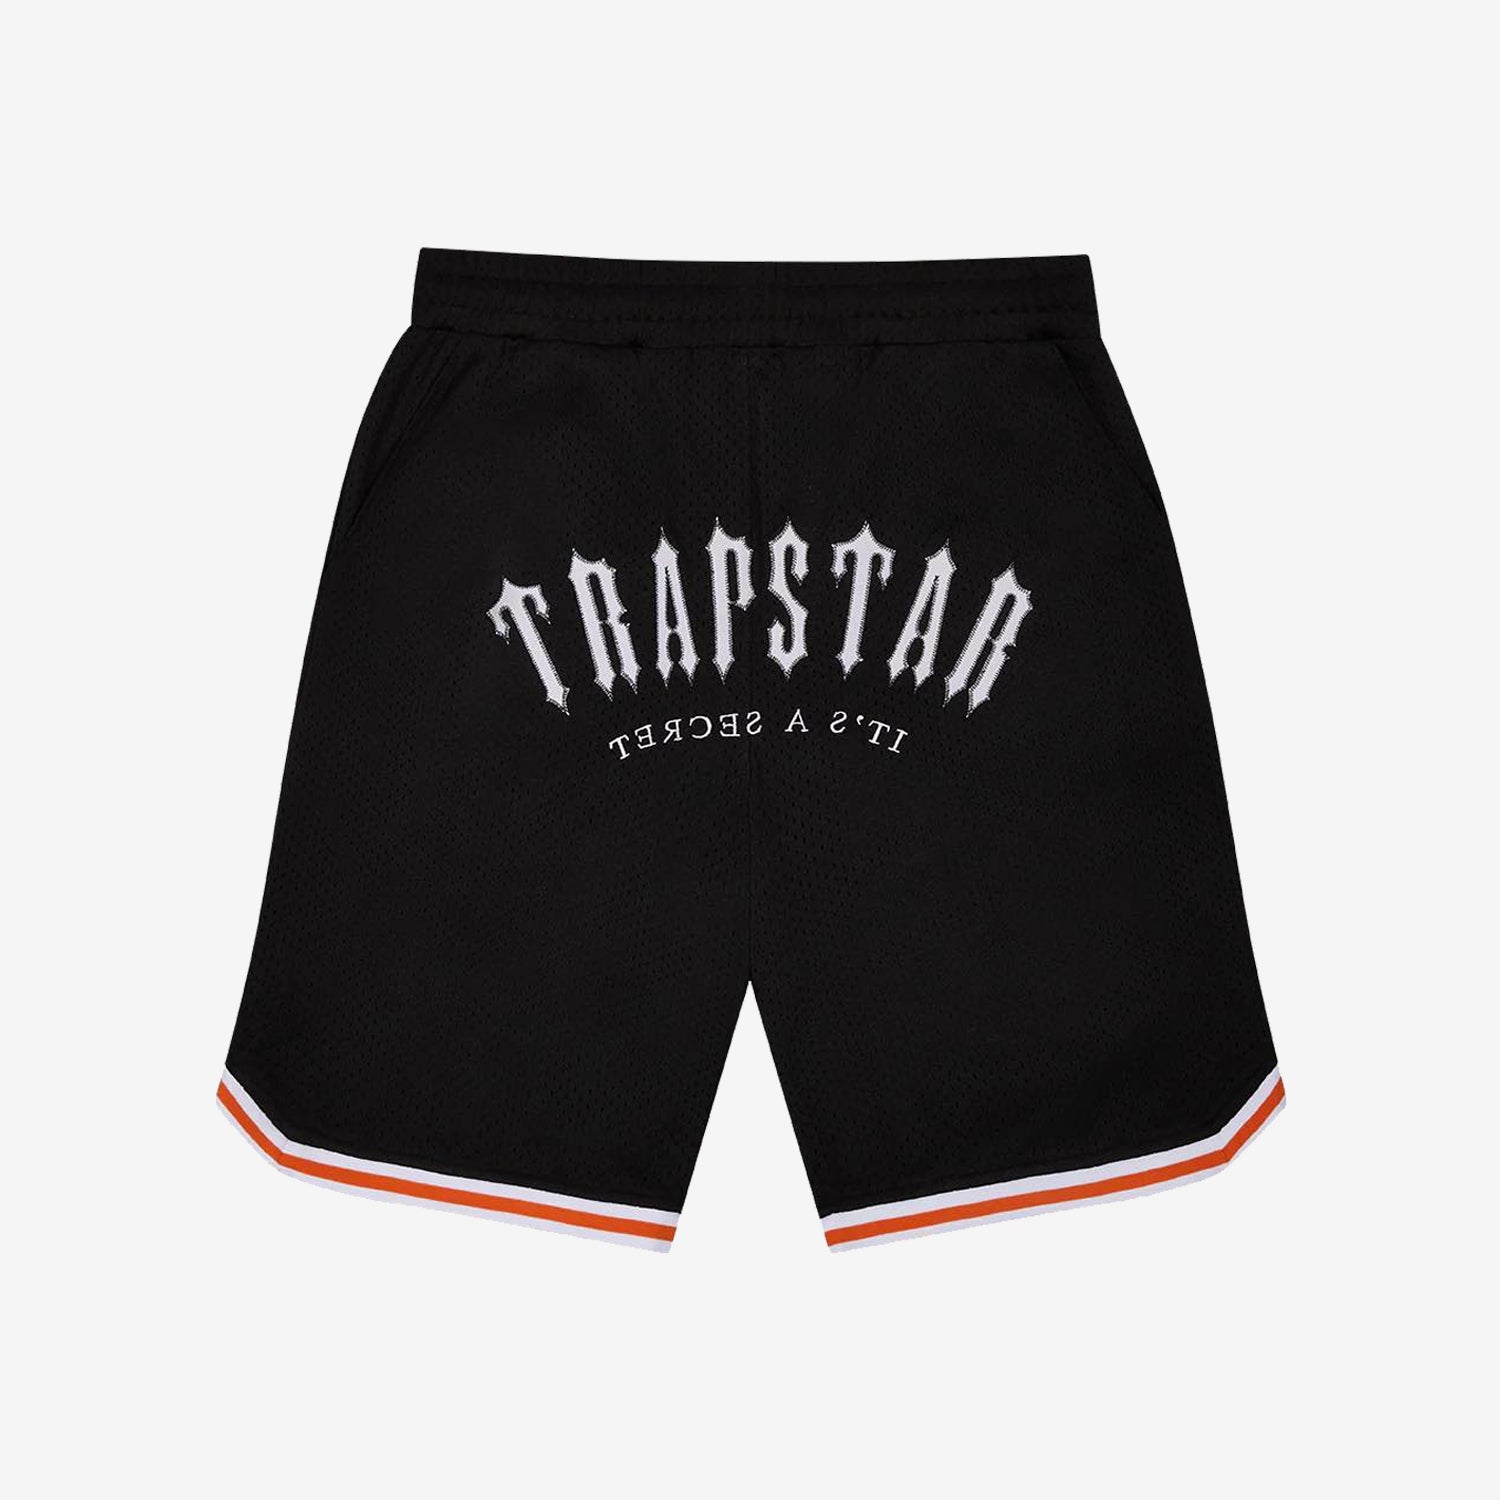 Trapstar Irongate Arch Basketball Shorts - Black